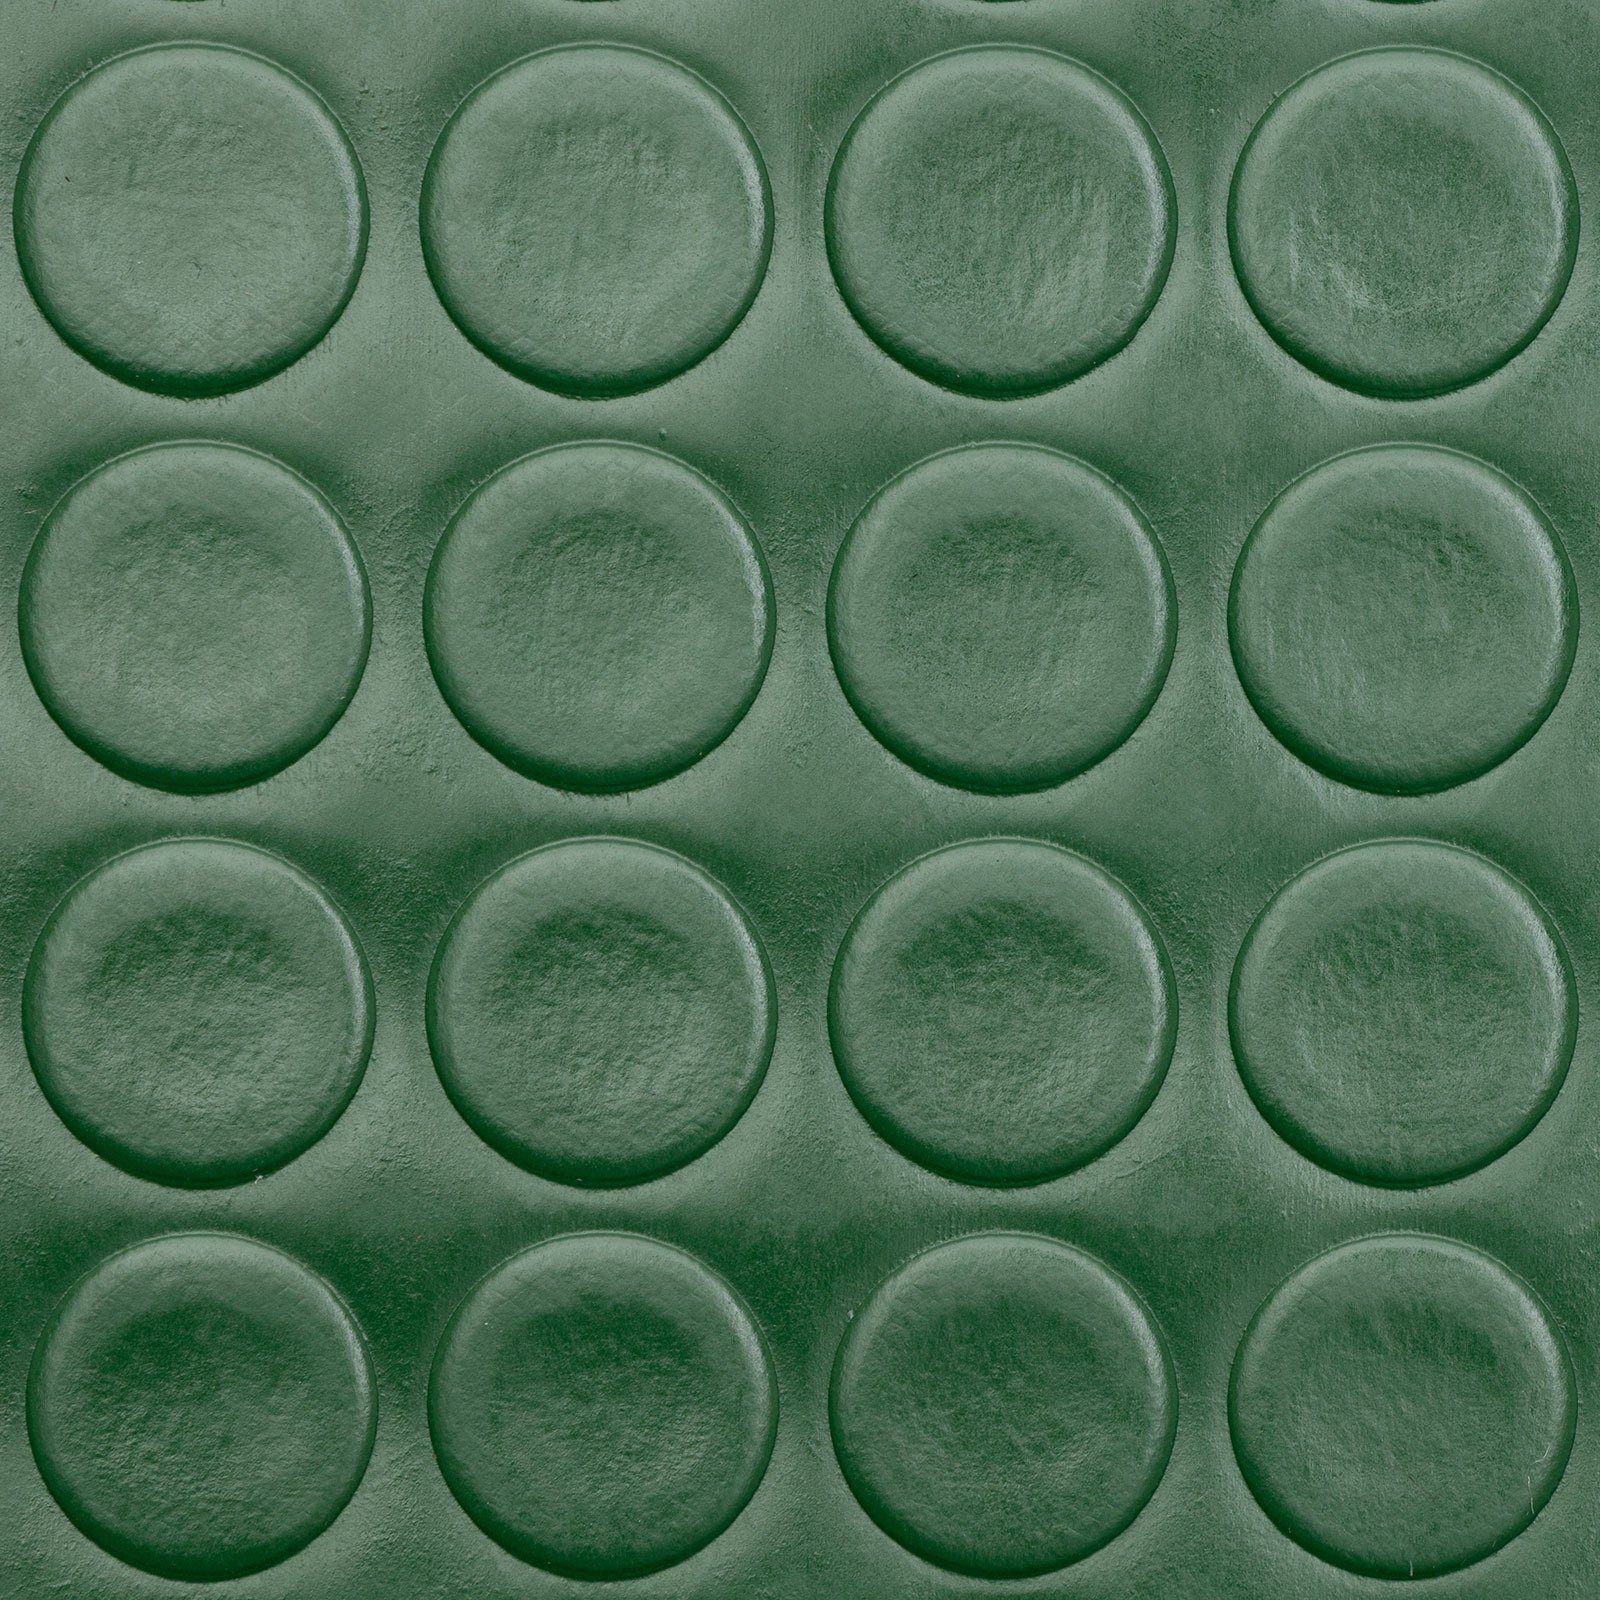 Grün Karat Button, Für Bodenschutzmatte und private Big gewerbliche Nutzung